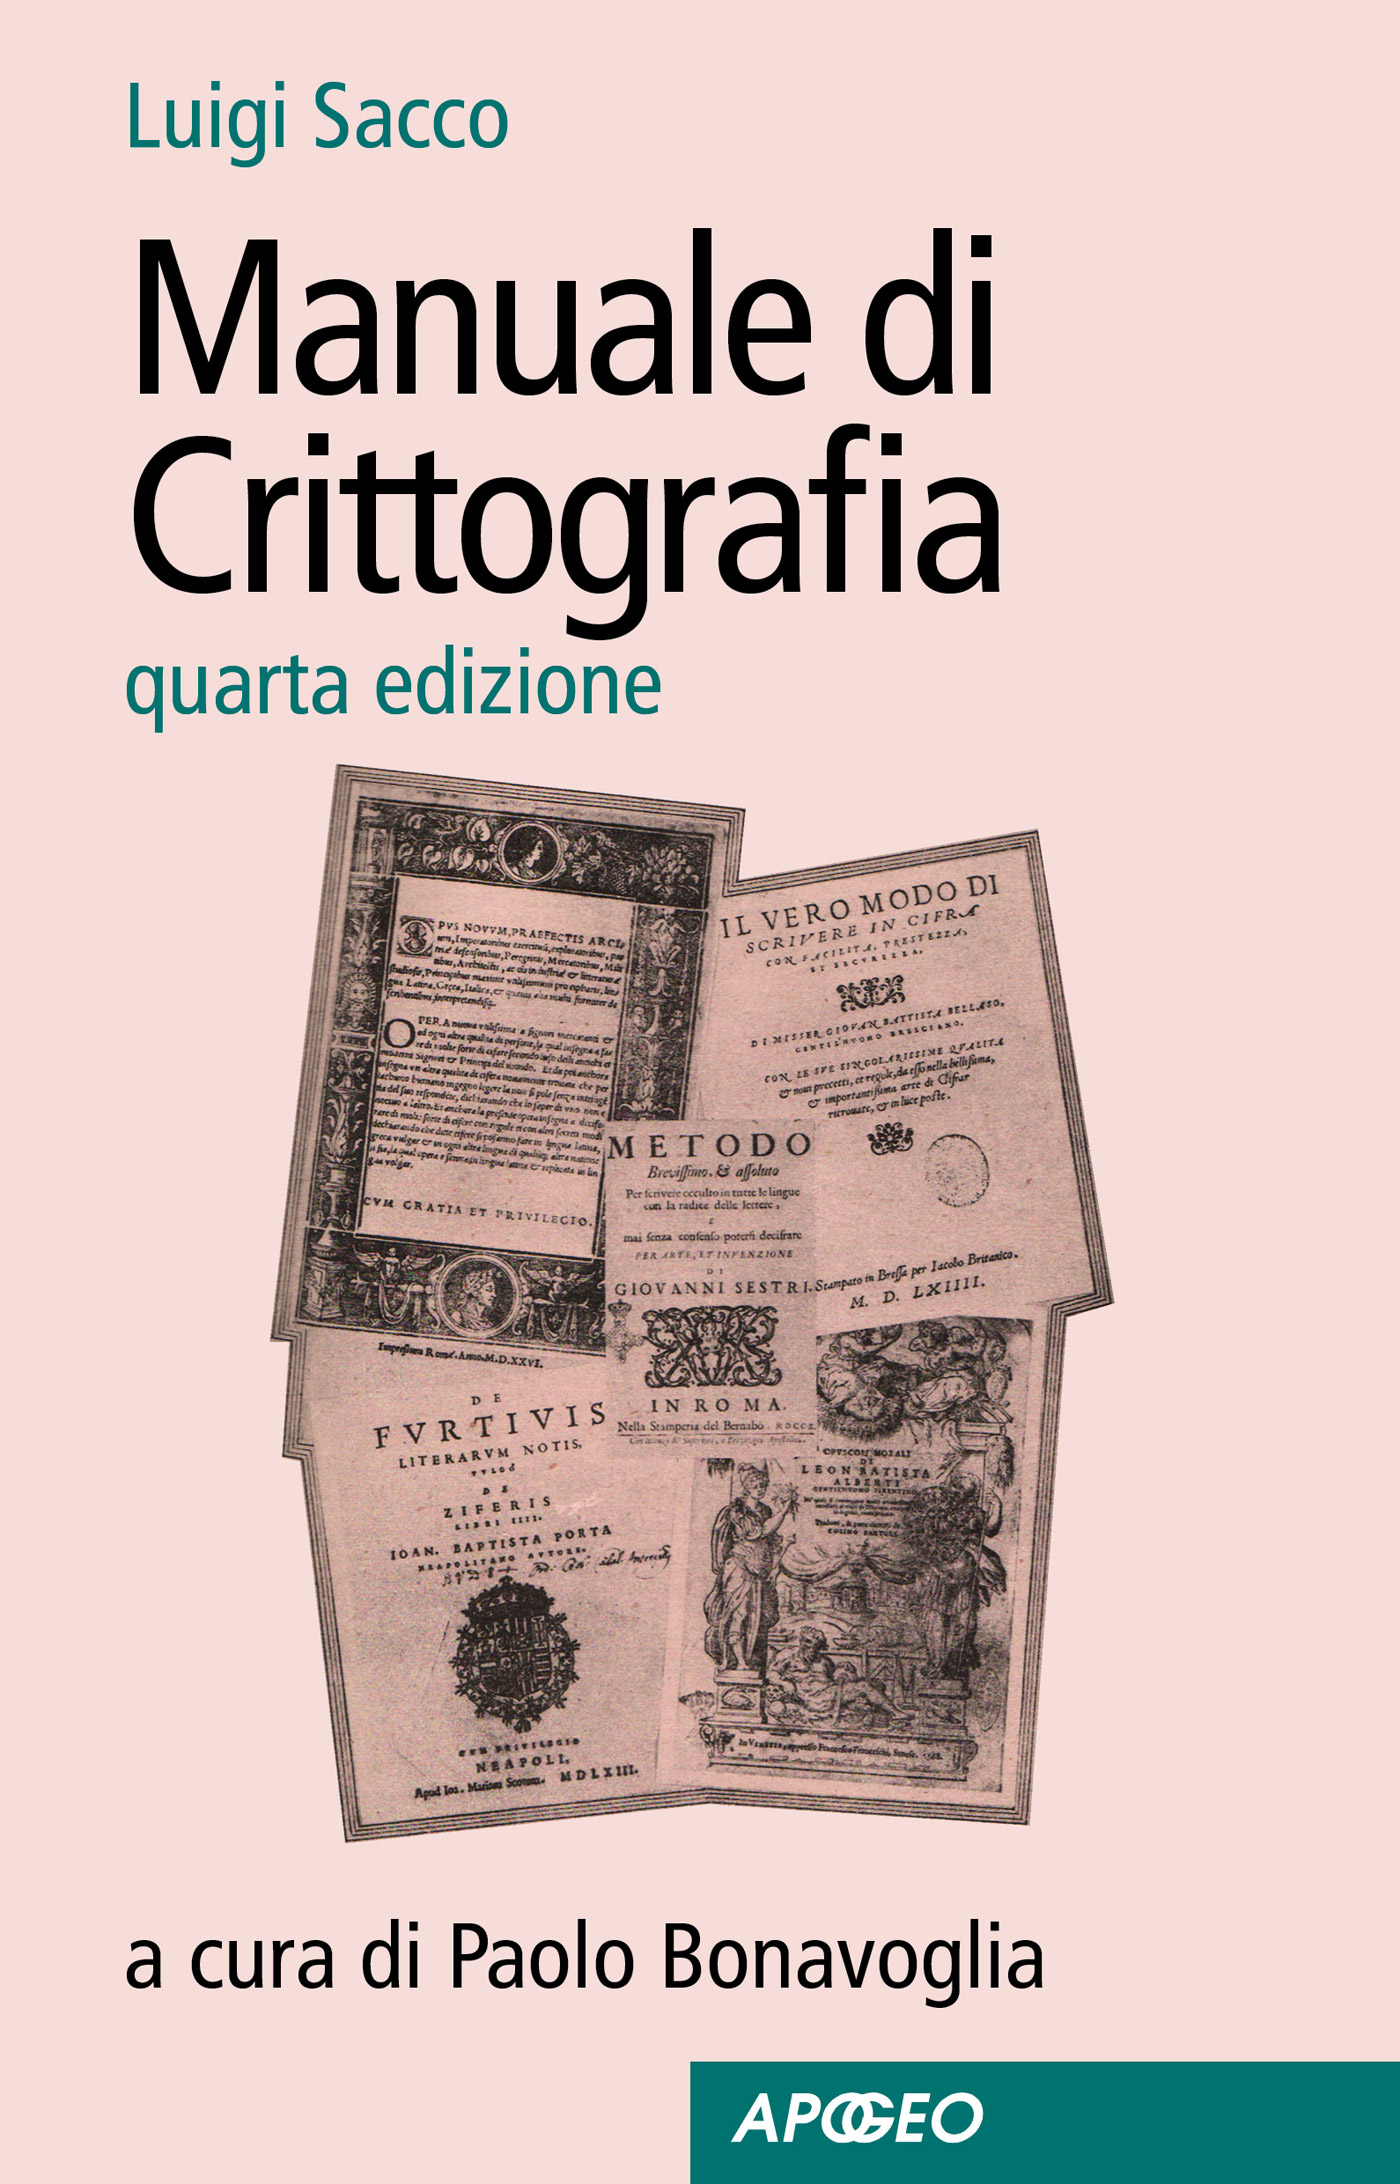 Manuale di Crittografia – Luigi Sacco